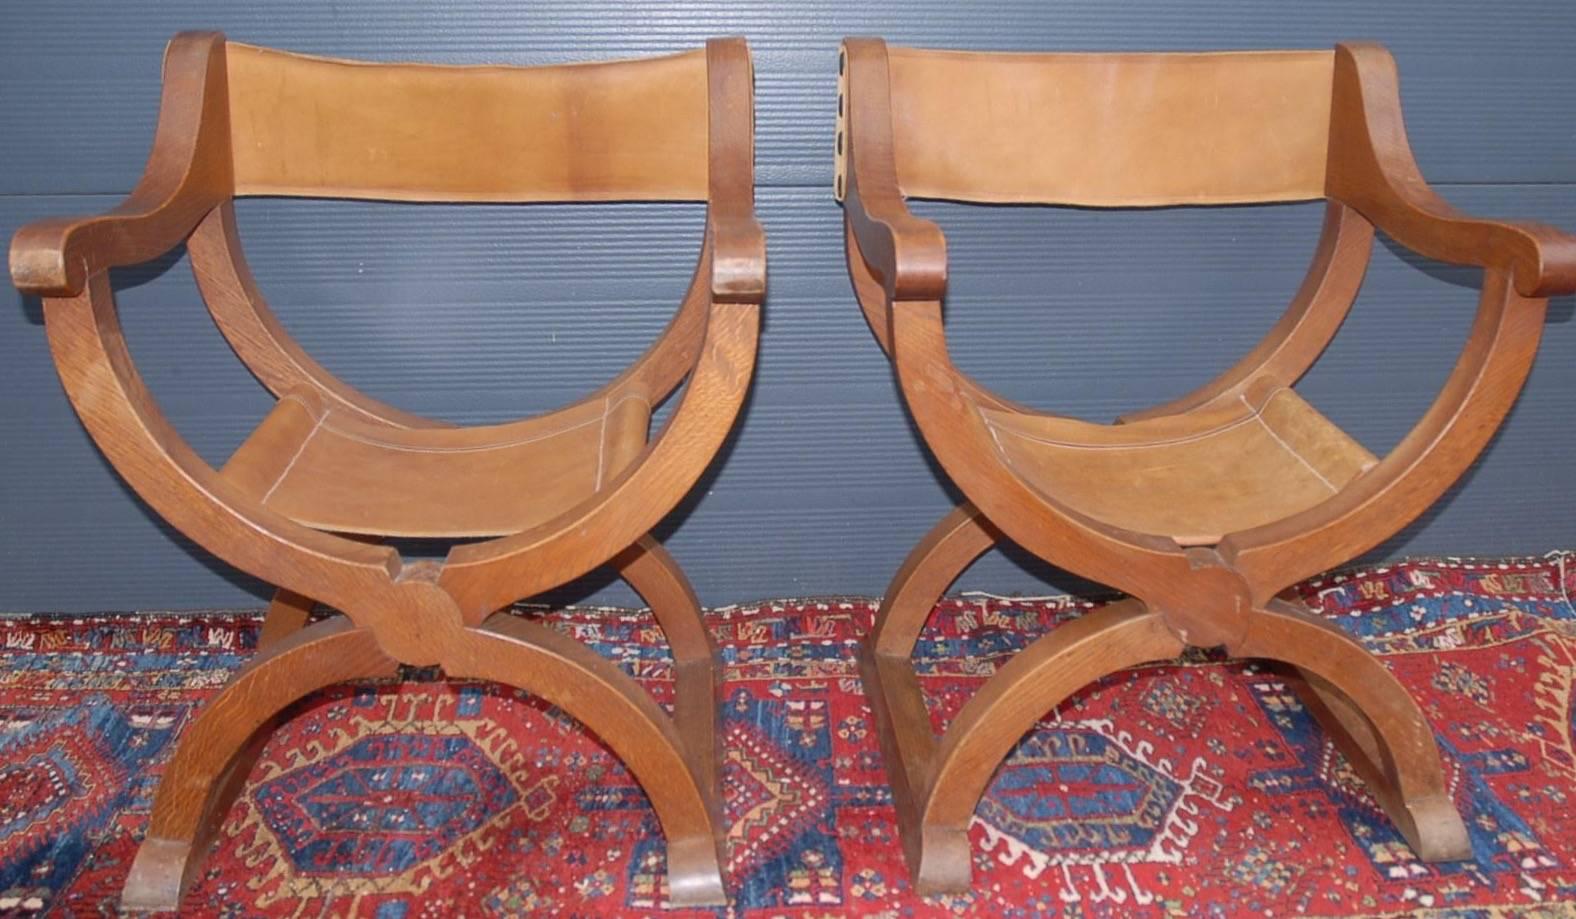 Stilvolle und handgefertigte Klappstühle mit X-Rahmen aus der Zeit um 1950.

Diese stilisierten Renaissancestühle sind aus massiver Tigereiche gefertigt und werden mit Ledersitzen und -rückenlehnen geliefert, die alle in gutem Zustand sind. Die